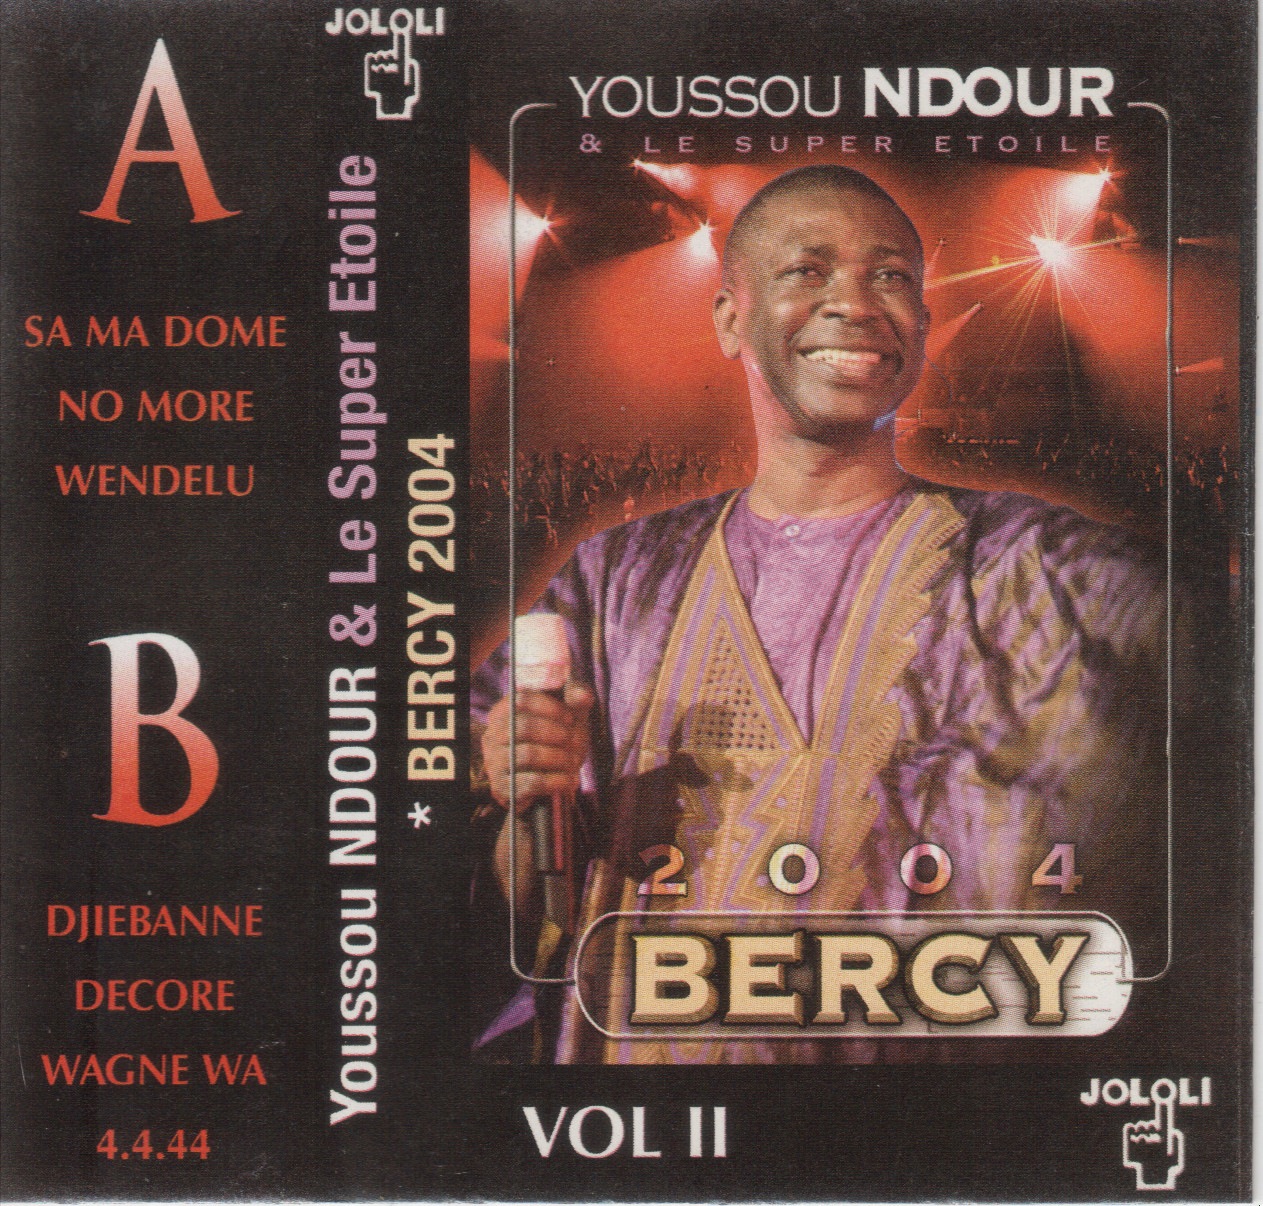 Youssou Ndour & Le Super Etoile - Bercy 2004 Vol II Cover+2